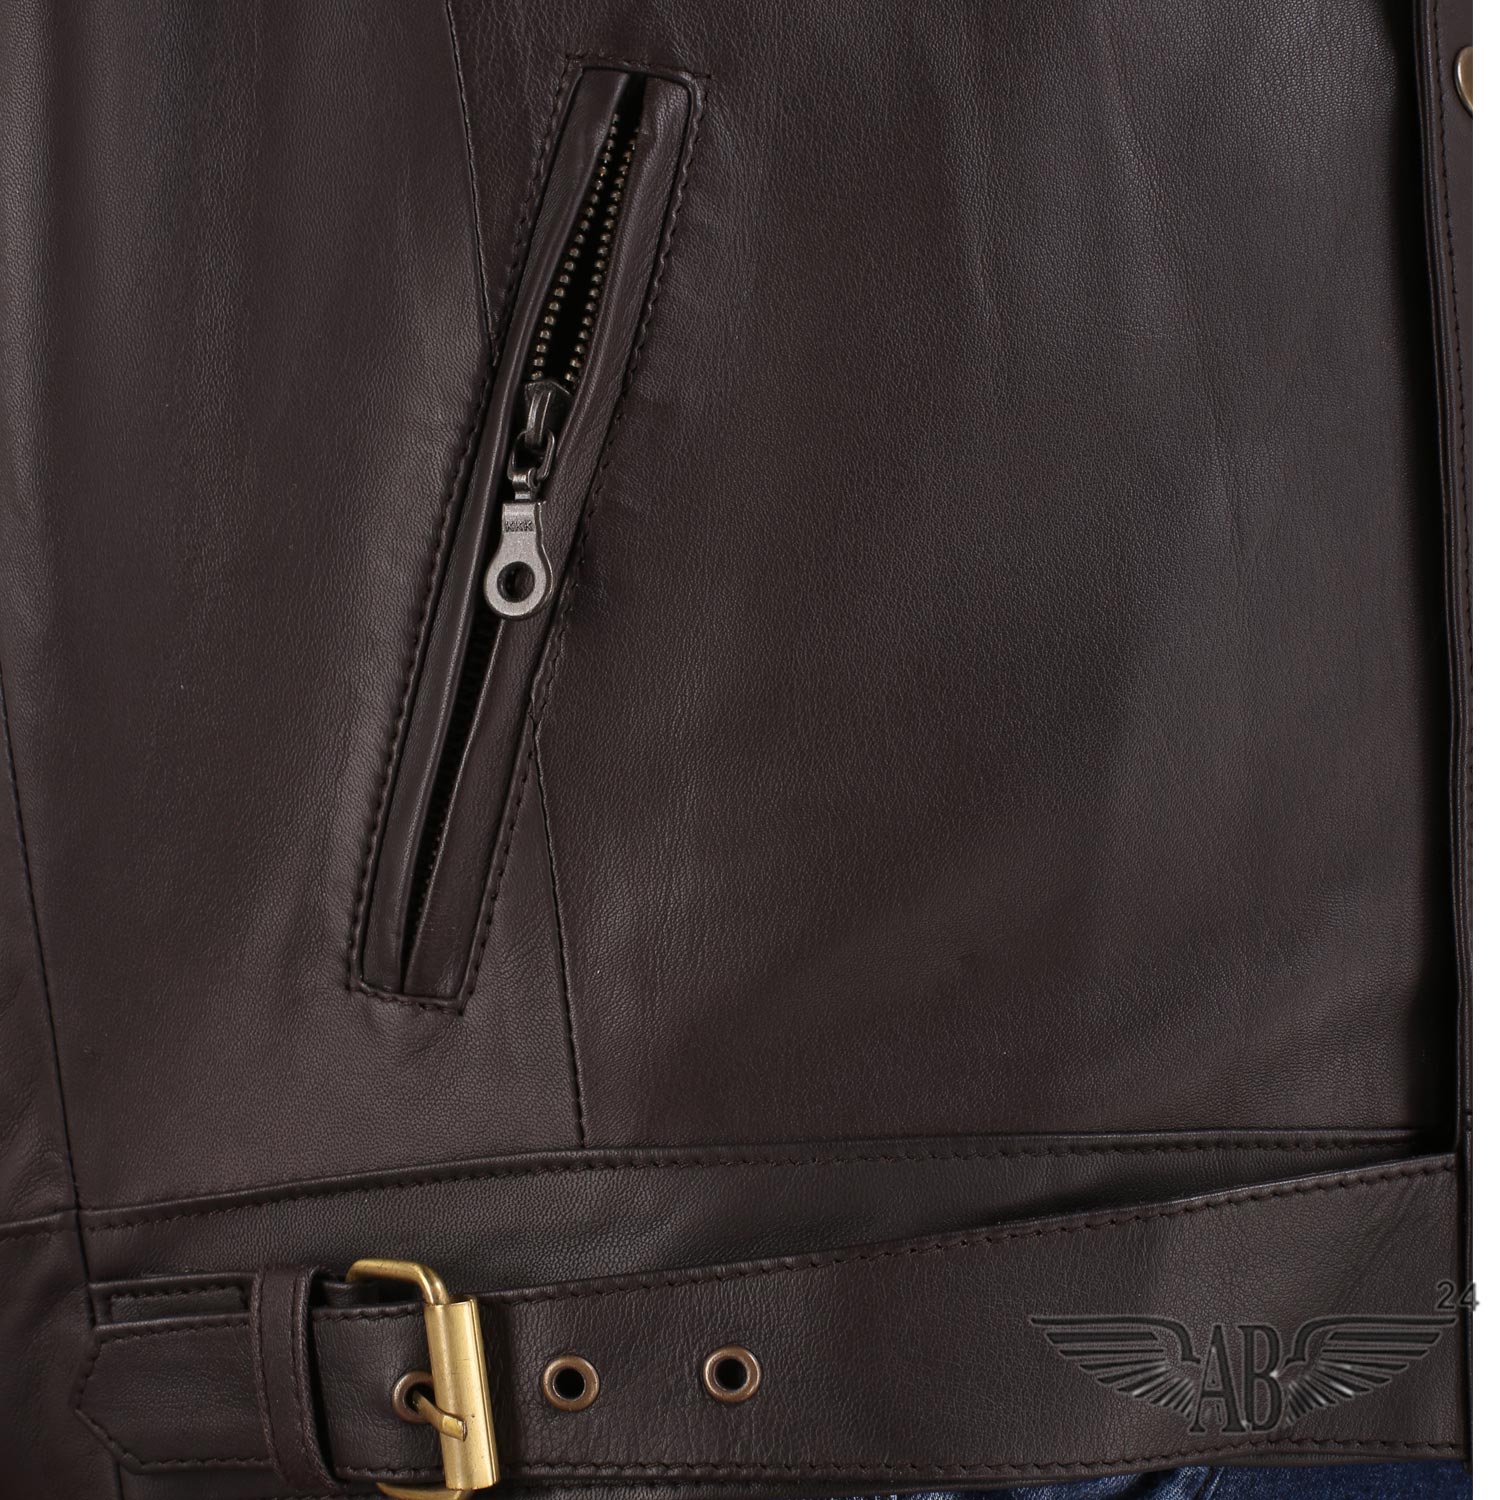 Slit pocket image of BELSTAF BIKER FASHION JACKET MENS. The slit pocket is zippered.